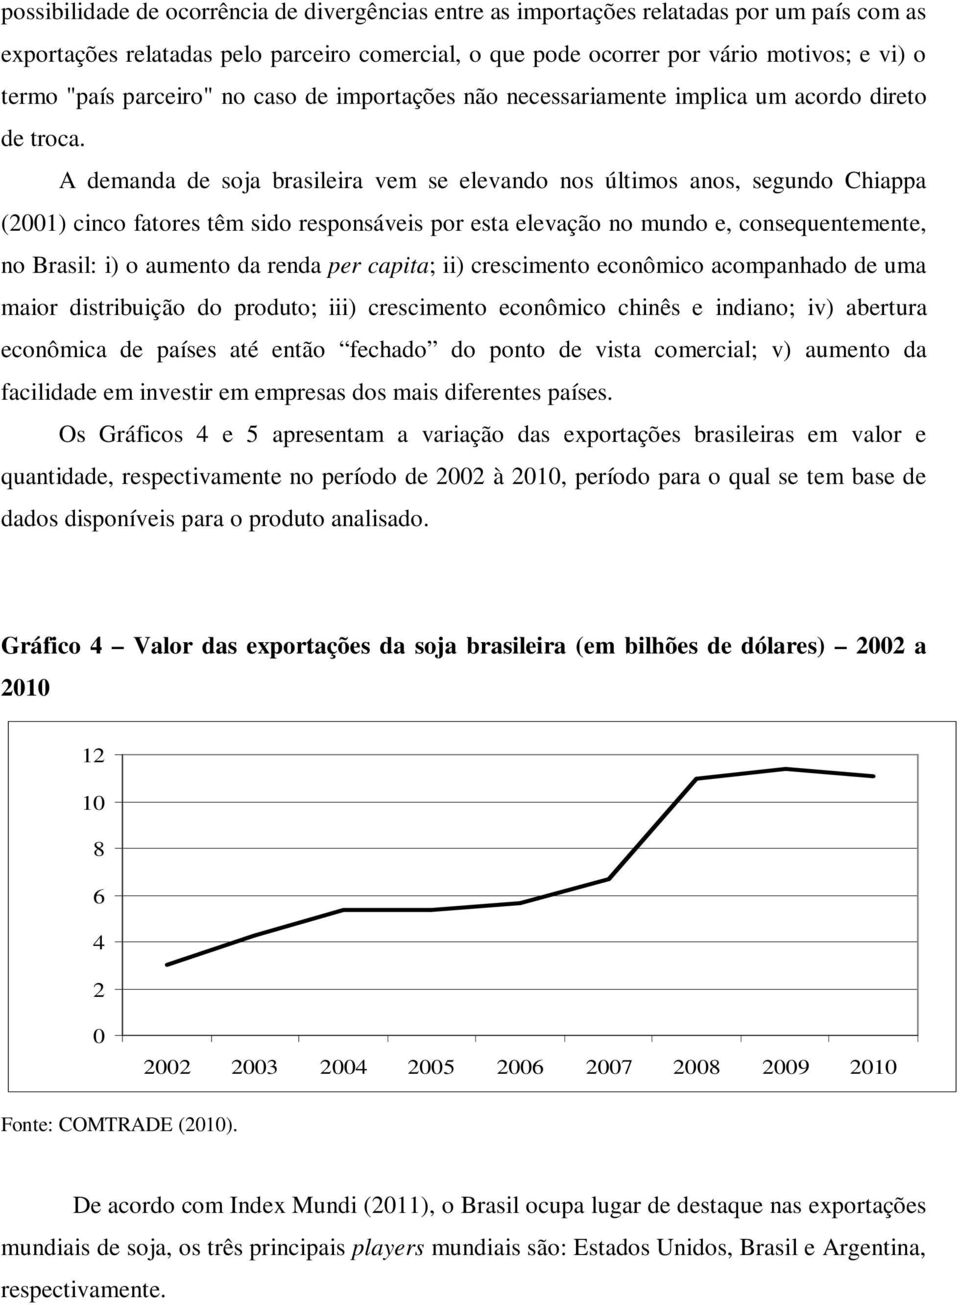 A demanda de soja brasileira vem se elevando nos últimos anos, segundo Chiappa (2001) cinco fatores têm sido responsáveis por esta elevação no mundo e, consequentemente, no Brasil: i) o aumento da